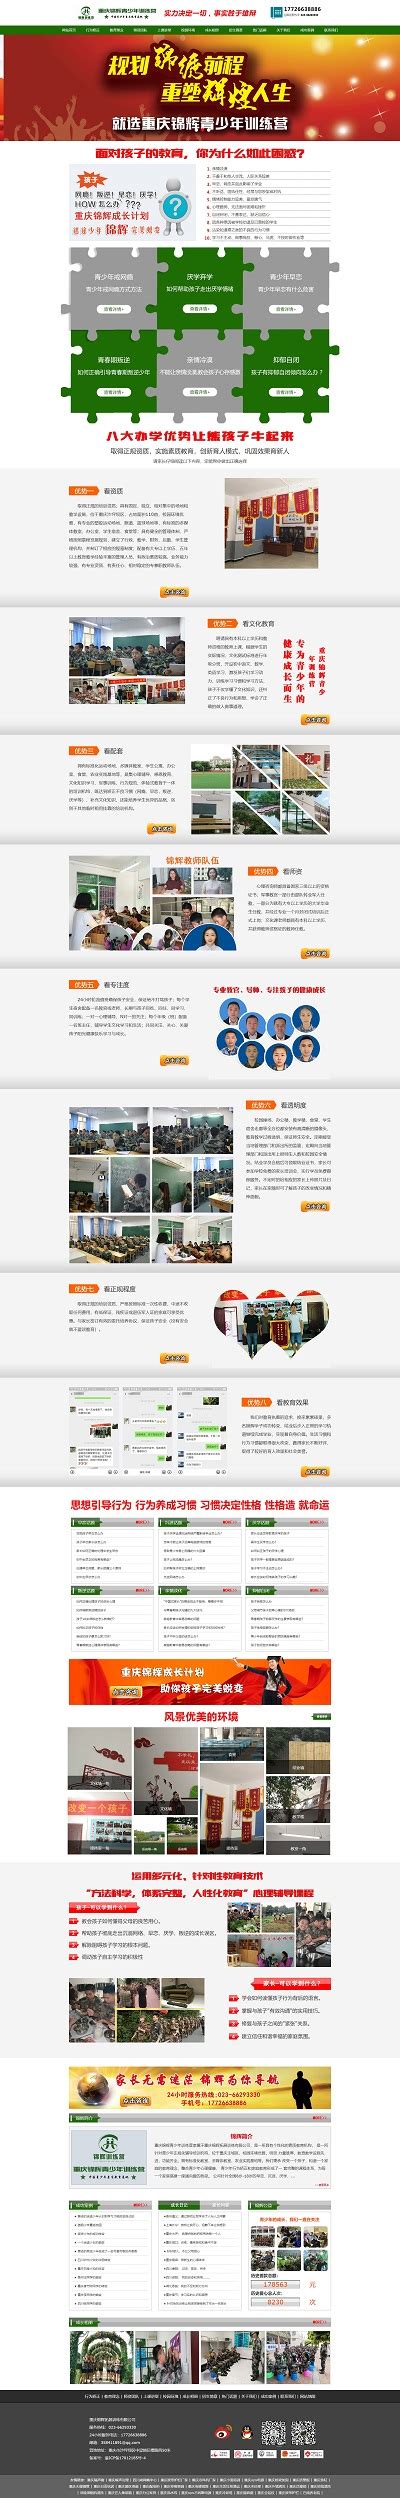 营销型网站建设-重庆营销型网站建设专家公司-帝壹网络